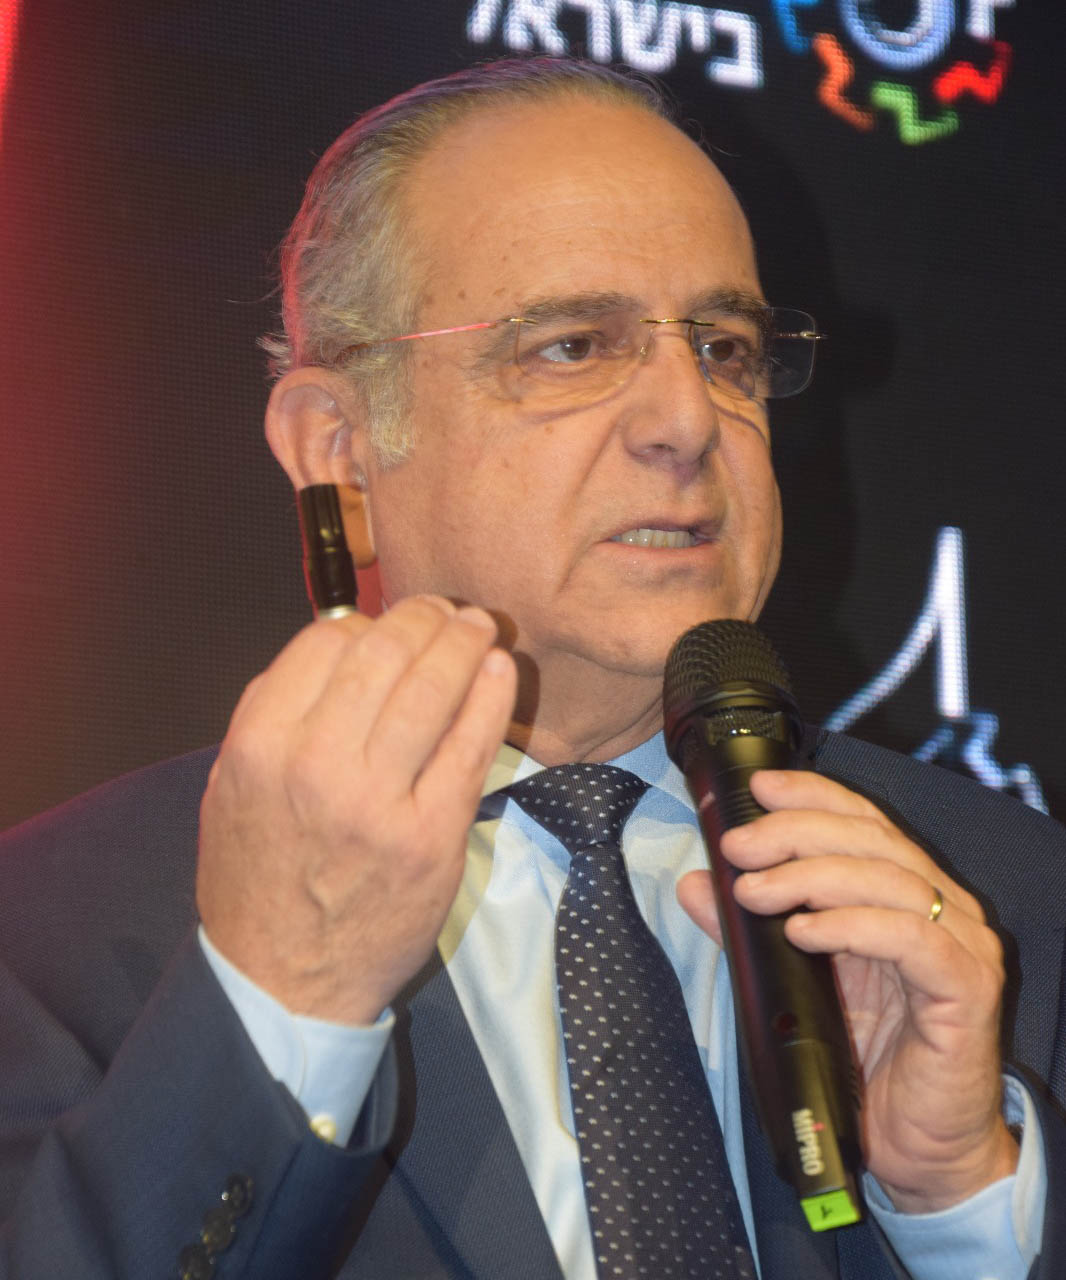 سارغا بروش، رئيس اتحاد المصنعين المتقاعد، في مؤتمر الصناعة الإسرائيلي. (الصورة: عومير كوهين)